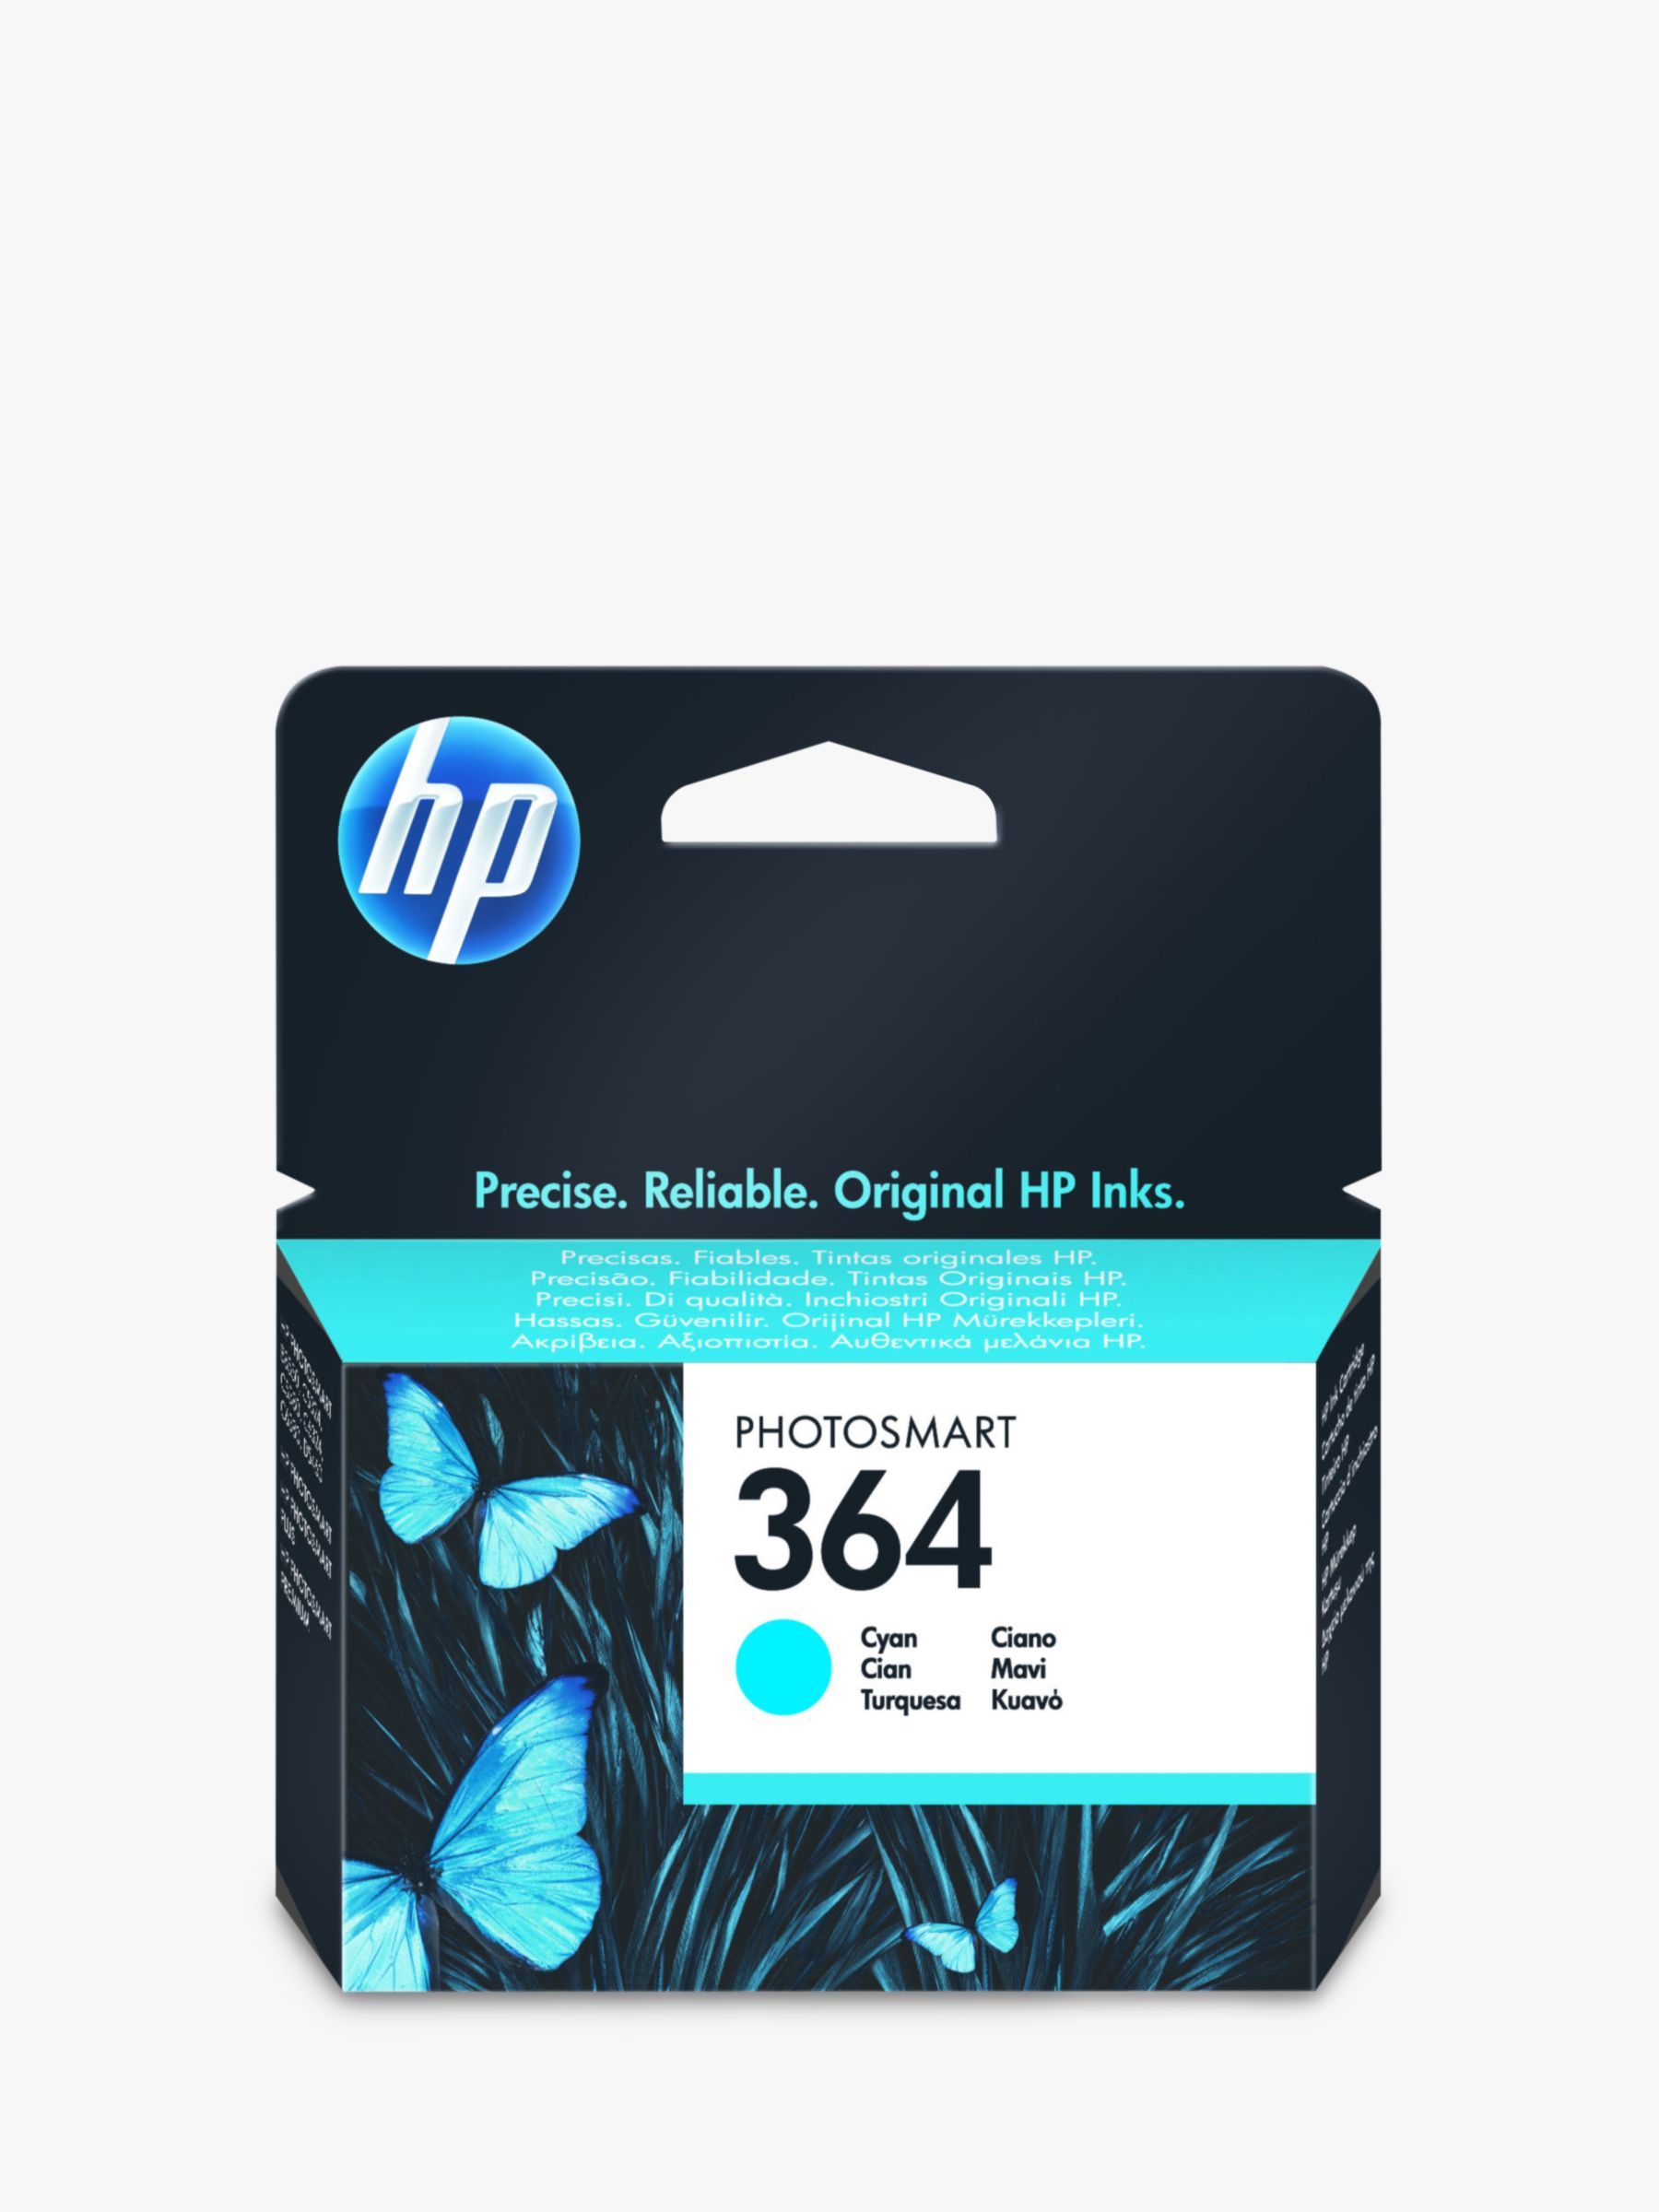 HP 364 Photosmart Ink Cartridge, Cyan, CB318EE